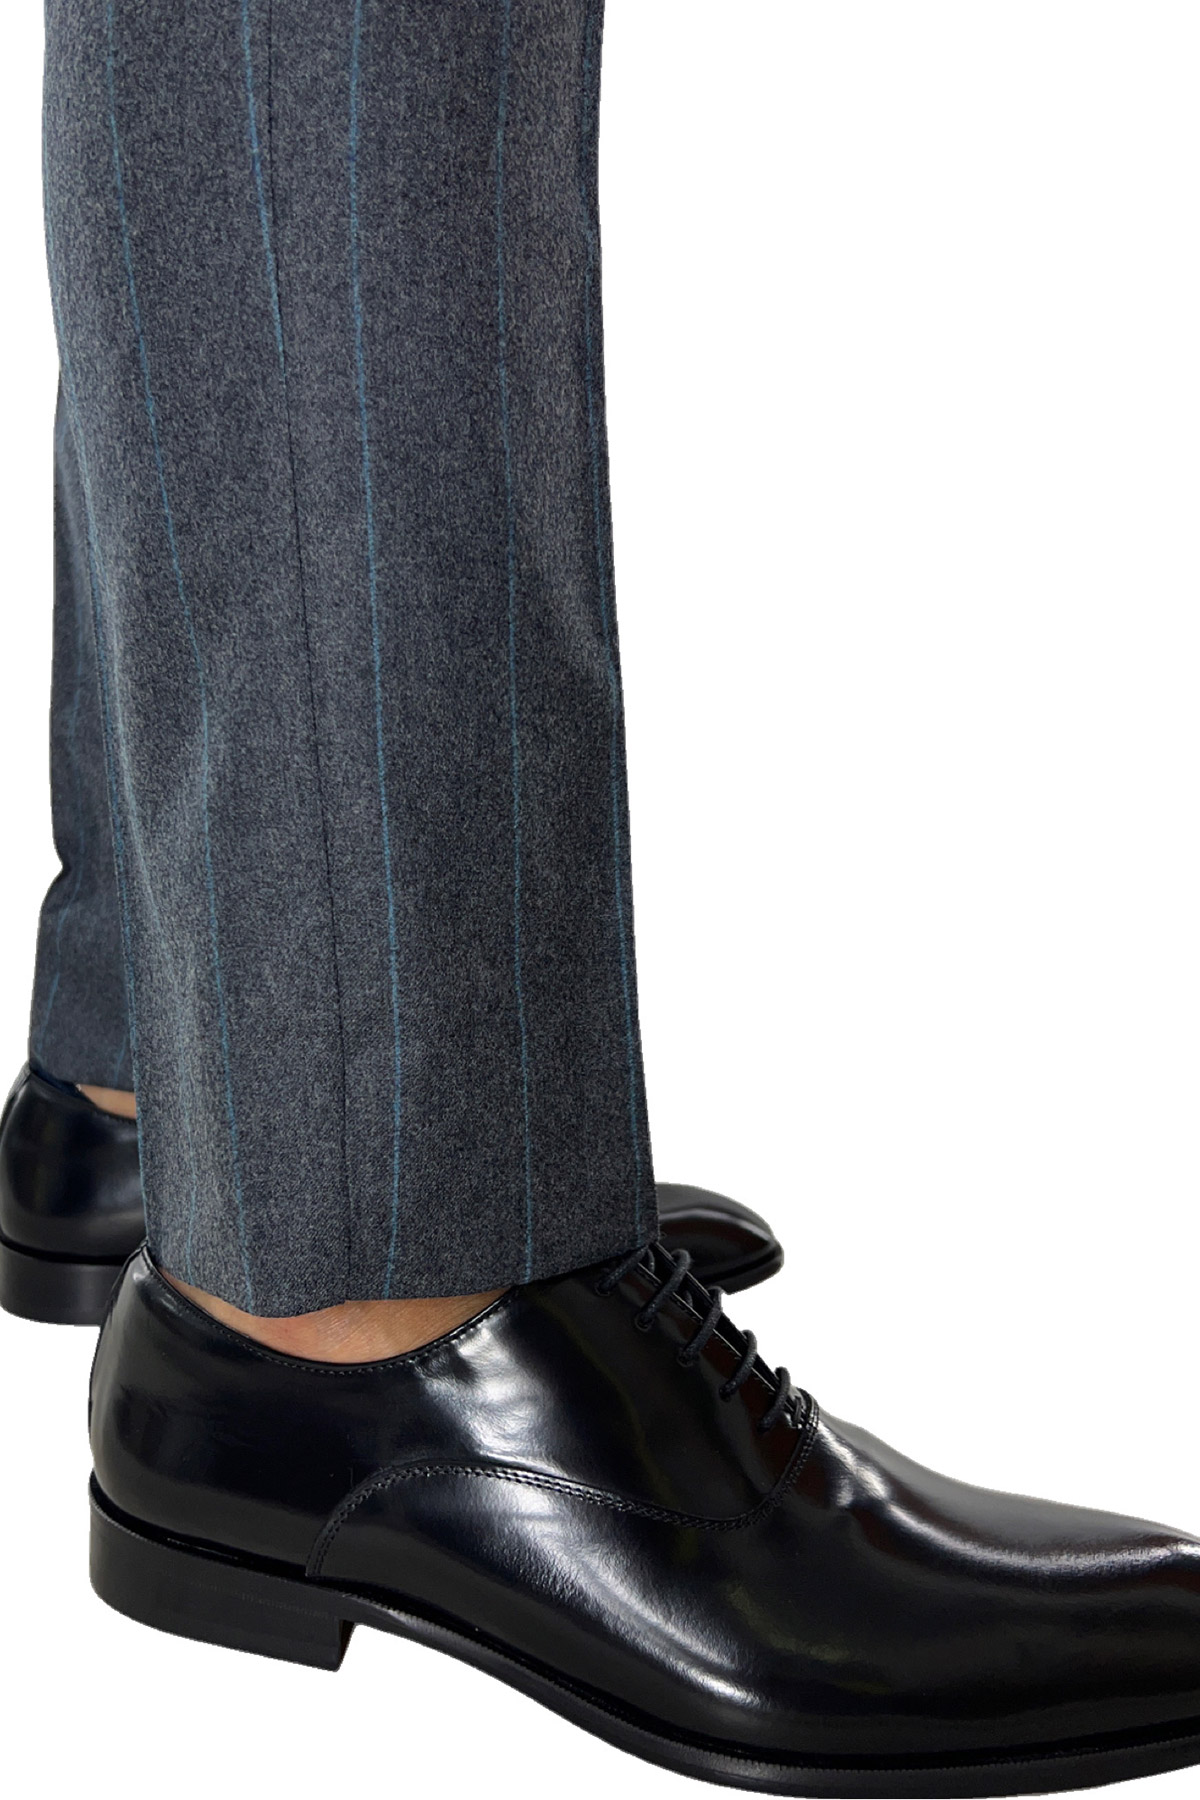 Pantalone uomo gessato grigio in lana 100% Vitale Barberis Canonico tasca america orlo a mano